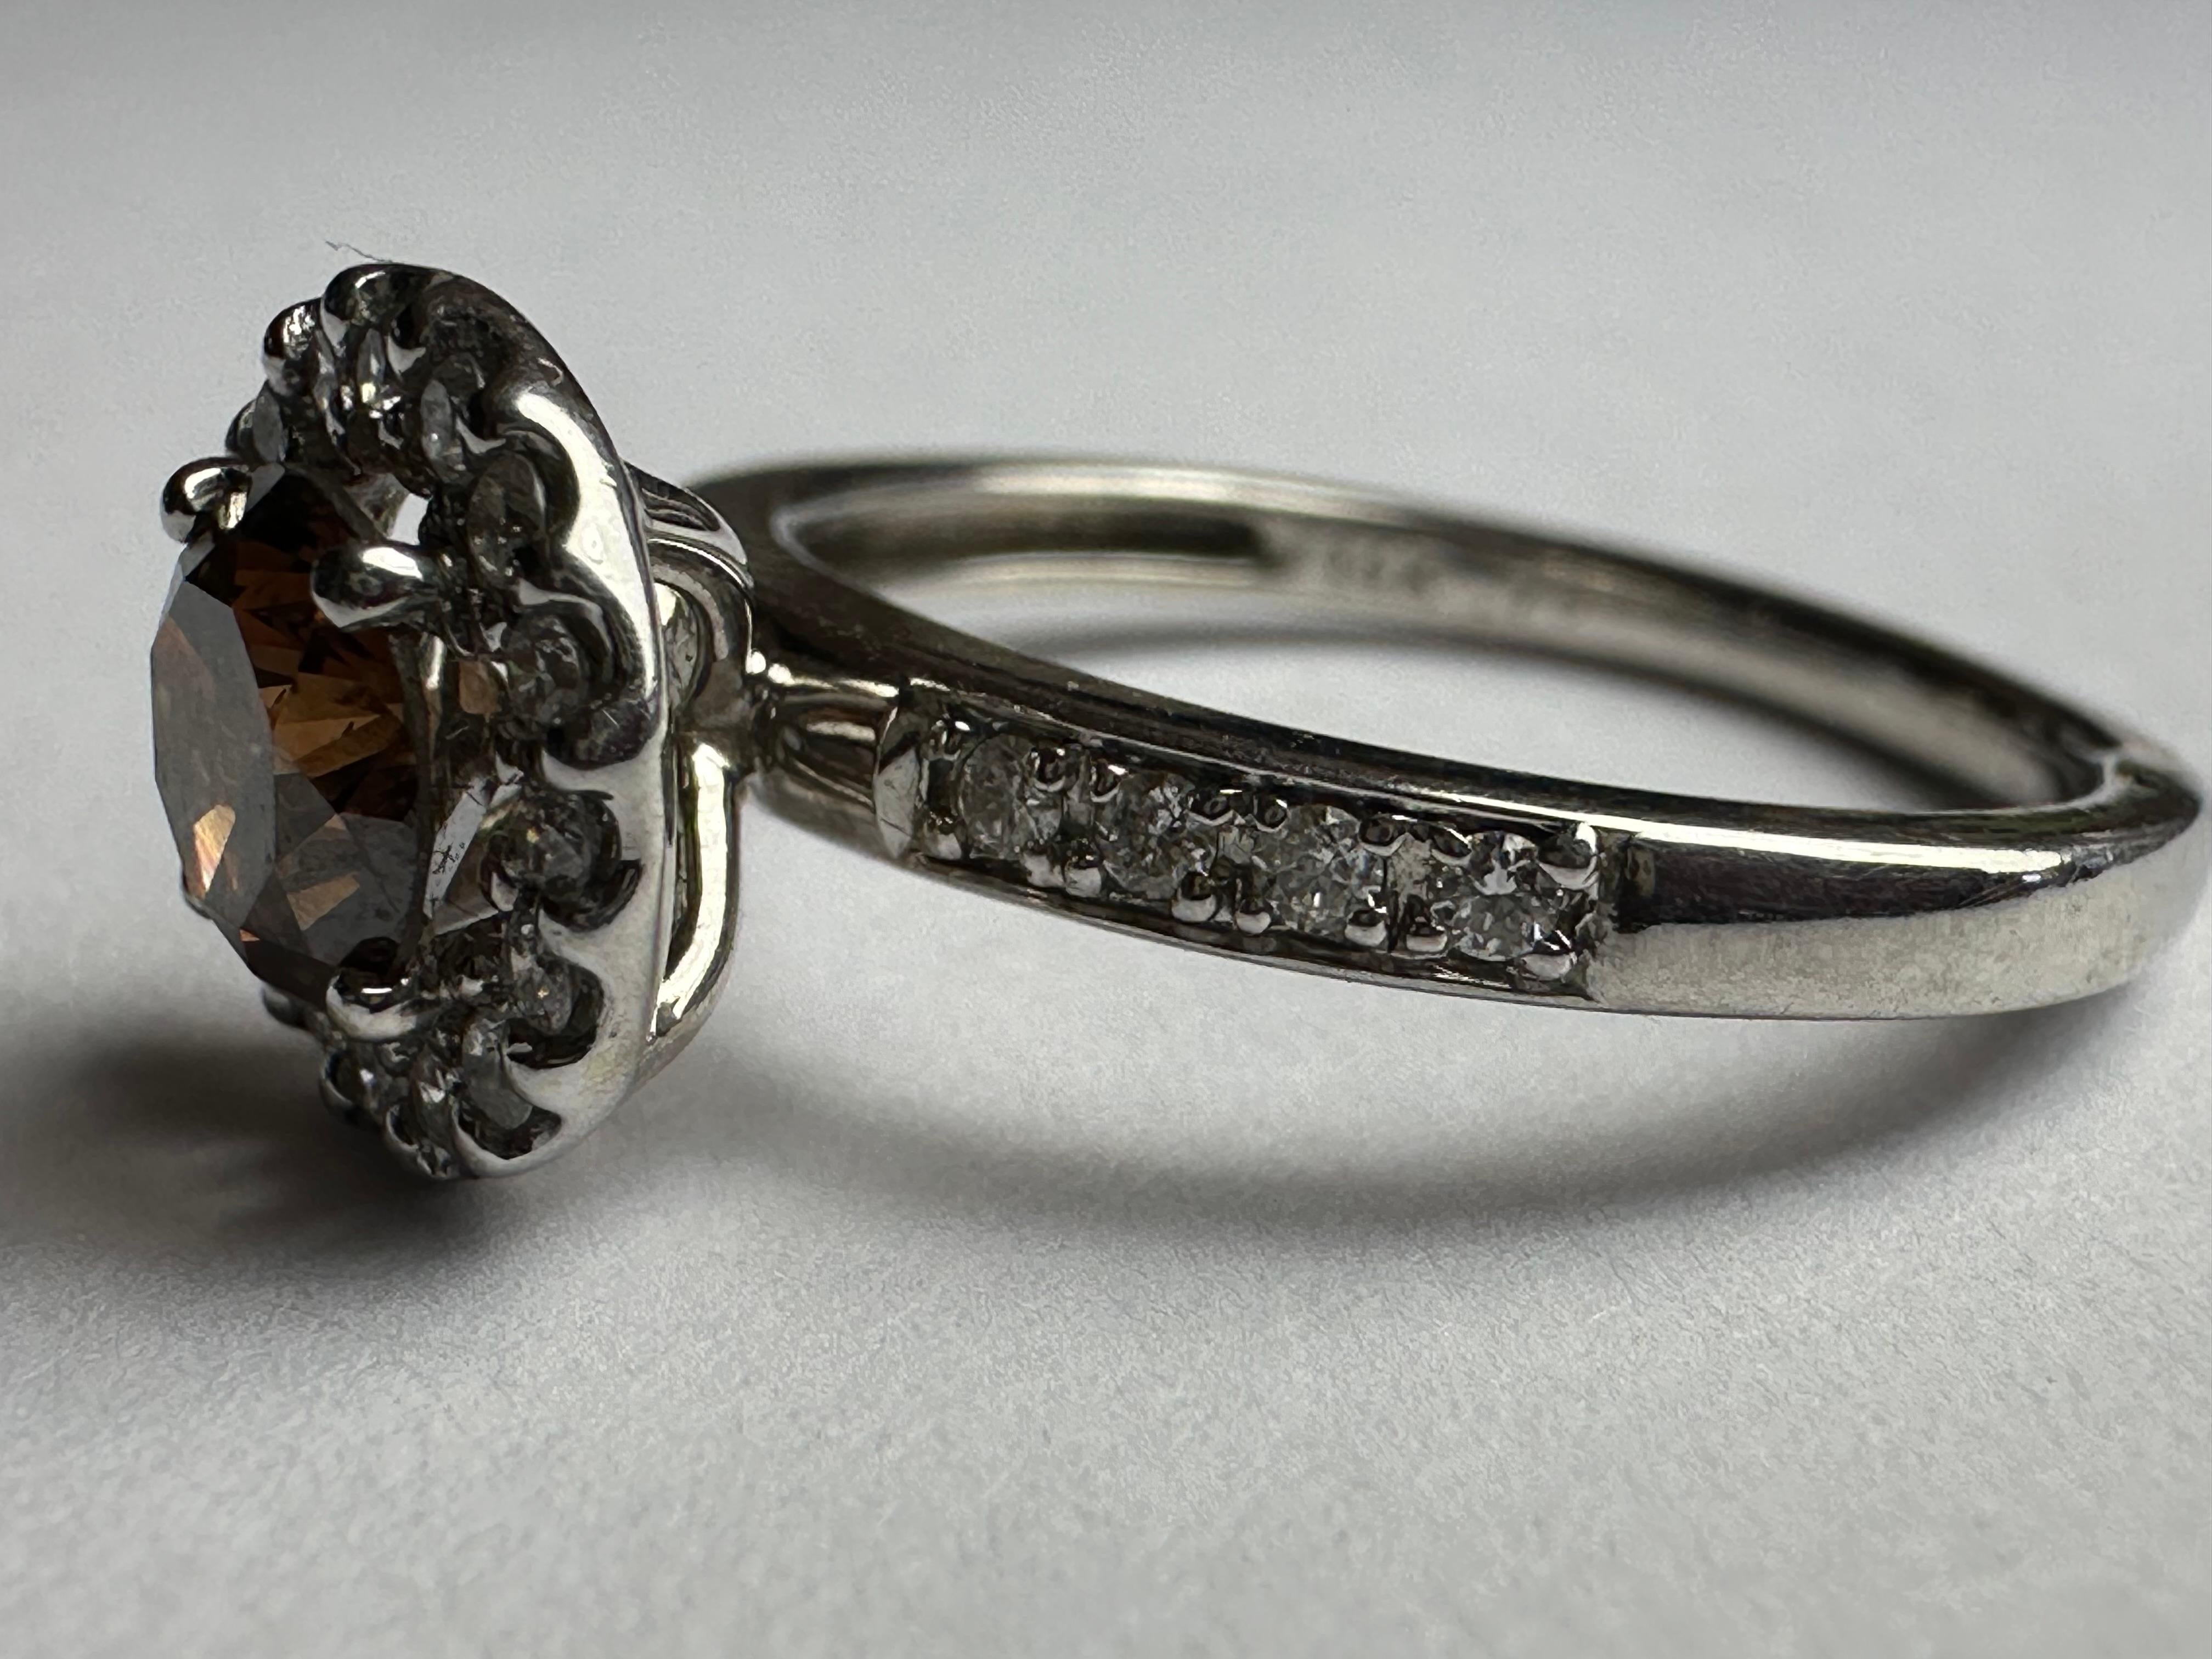 Ein runder Brillant von 0,73 Karat im natürlichen Fancy-Braun- oder Goldschliff, der auch als Schokoladendiamant bezeichnet wird, steht im Mittelpunkt dieses schillernden Rings, der von einem Kranz strahlend weißer Diamanten umringt ist. Fassung aus